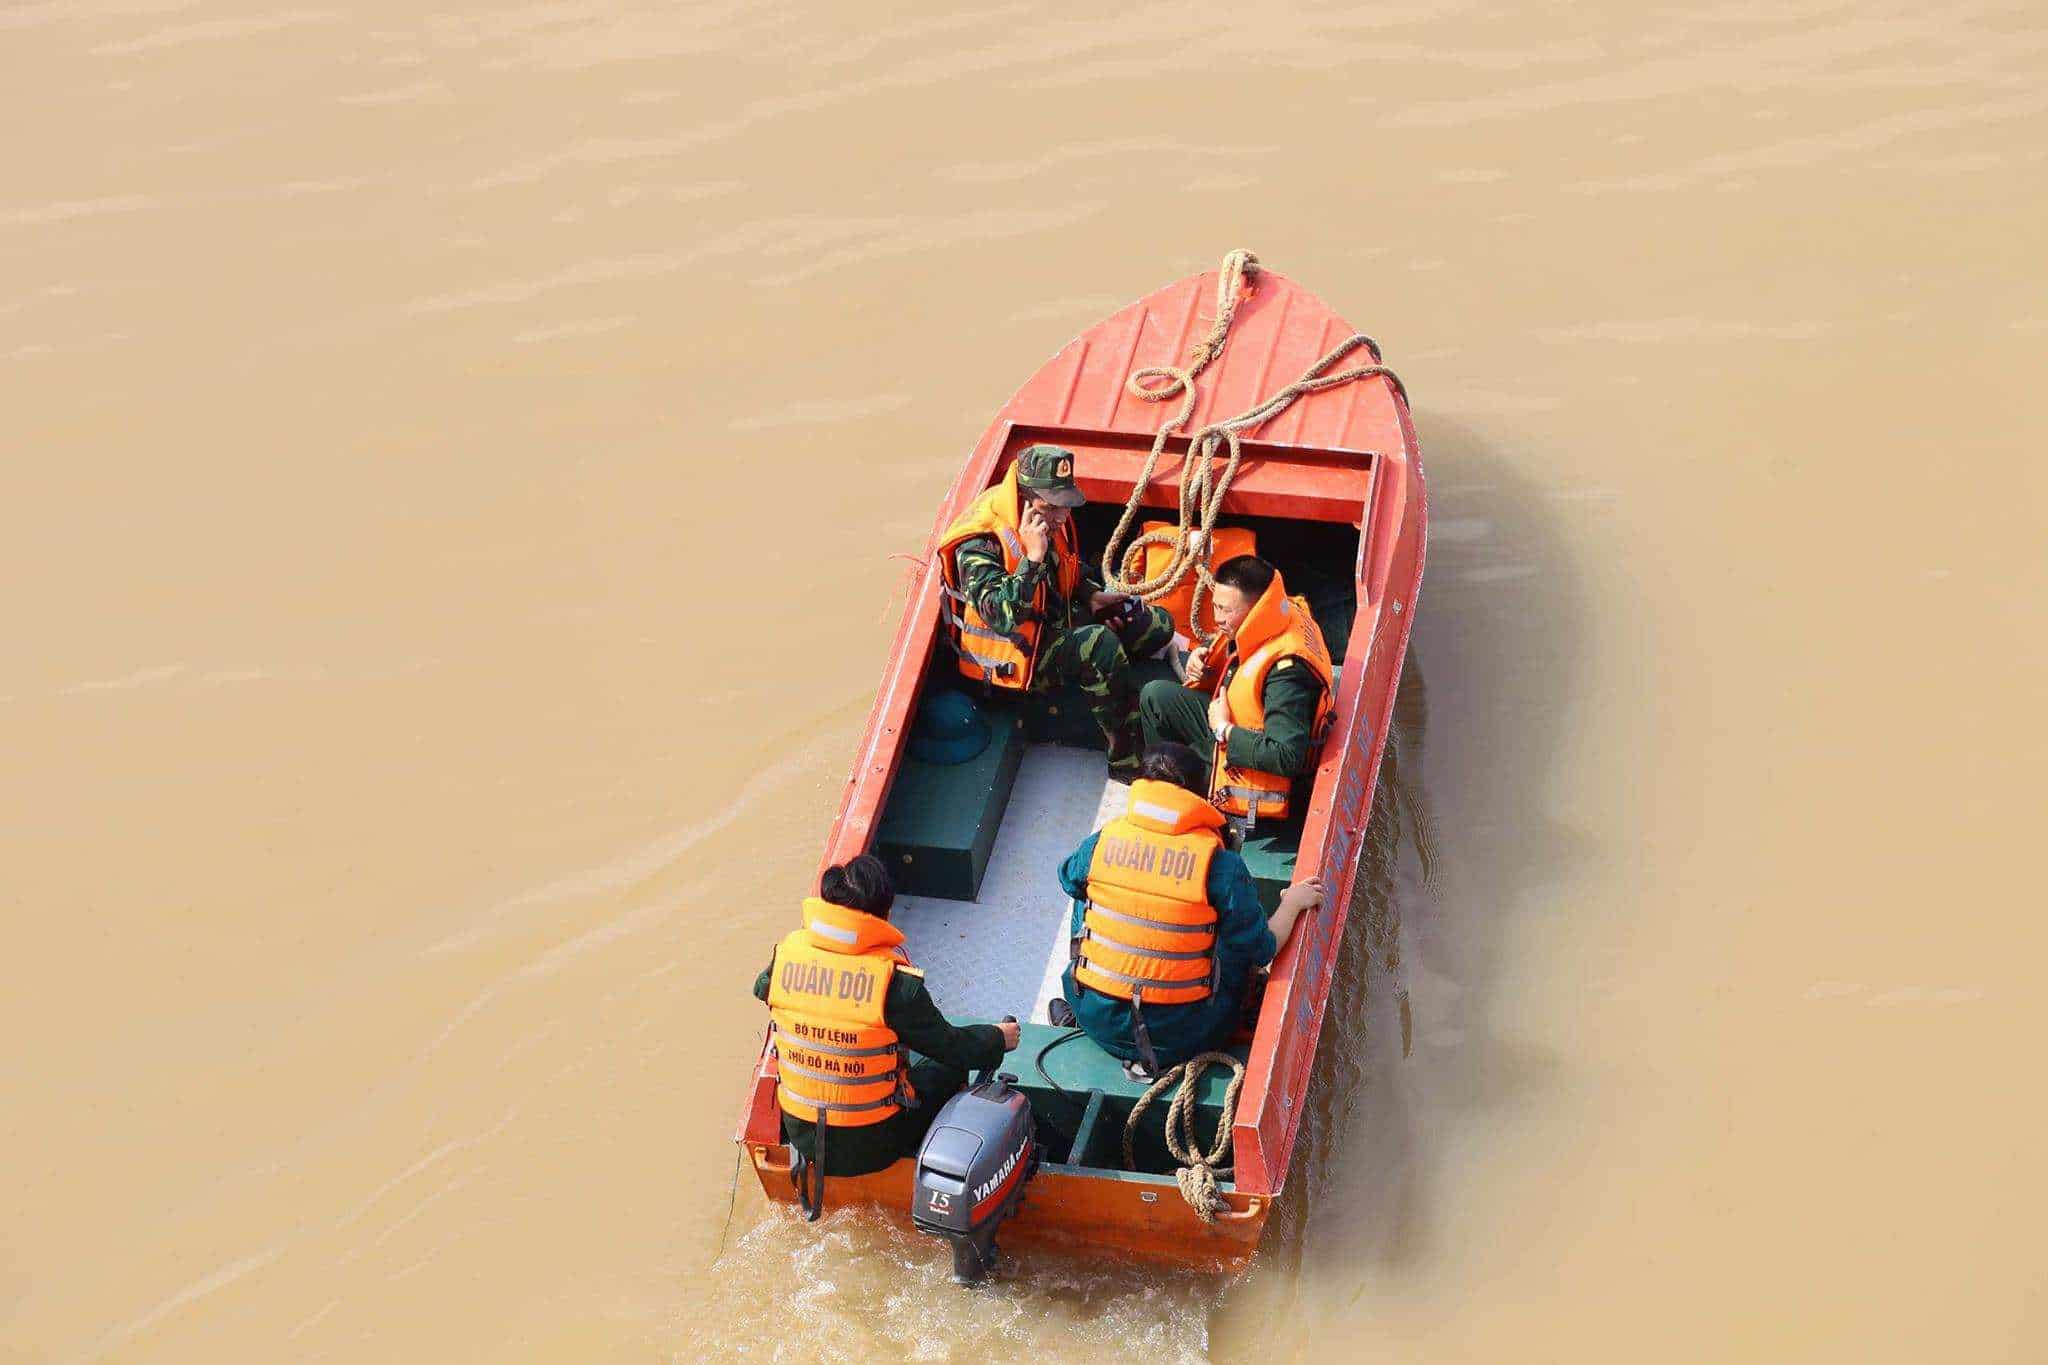 Hà Nội: Dân Thủ đô chen chân lên cầu Long Biên xem gỡ bom